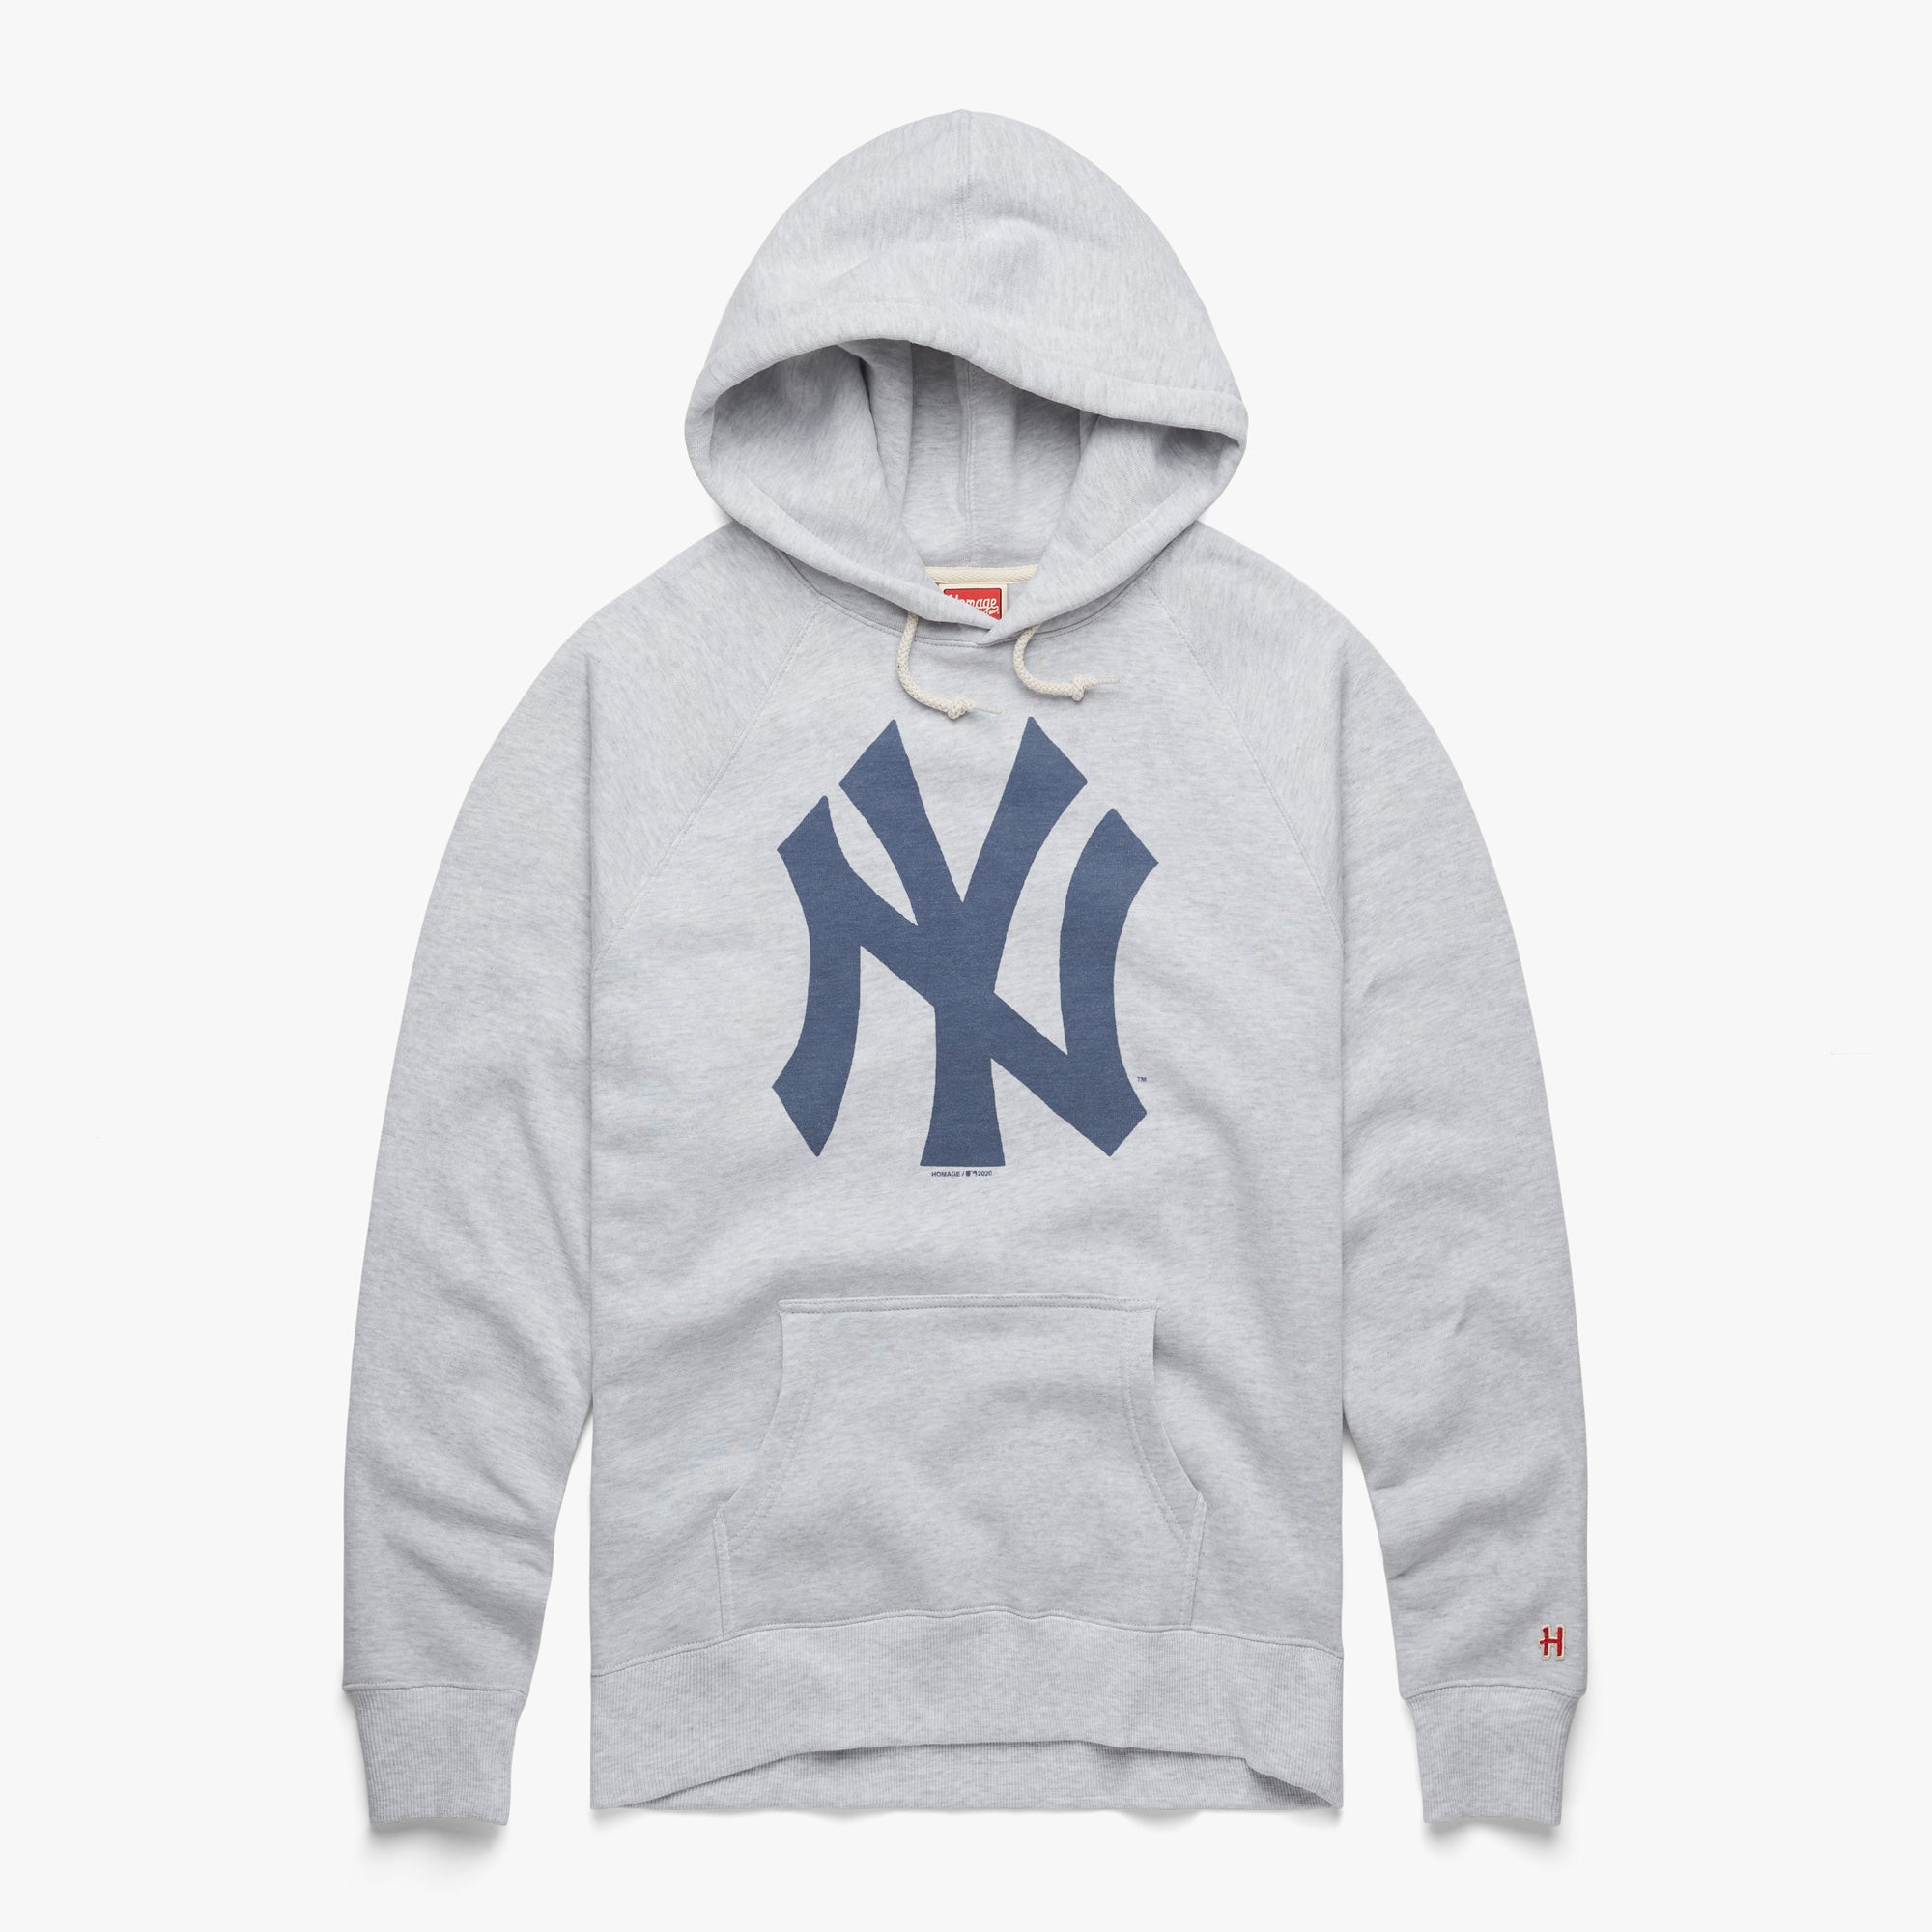 Yankees sweatshirt - .de